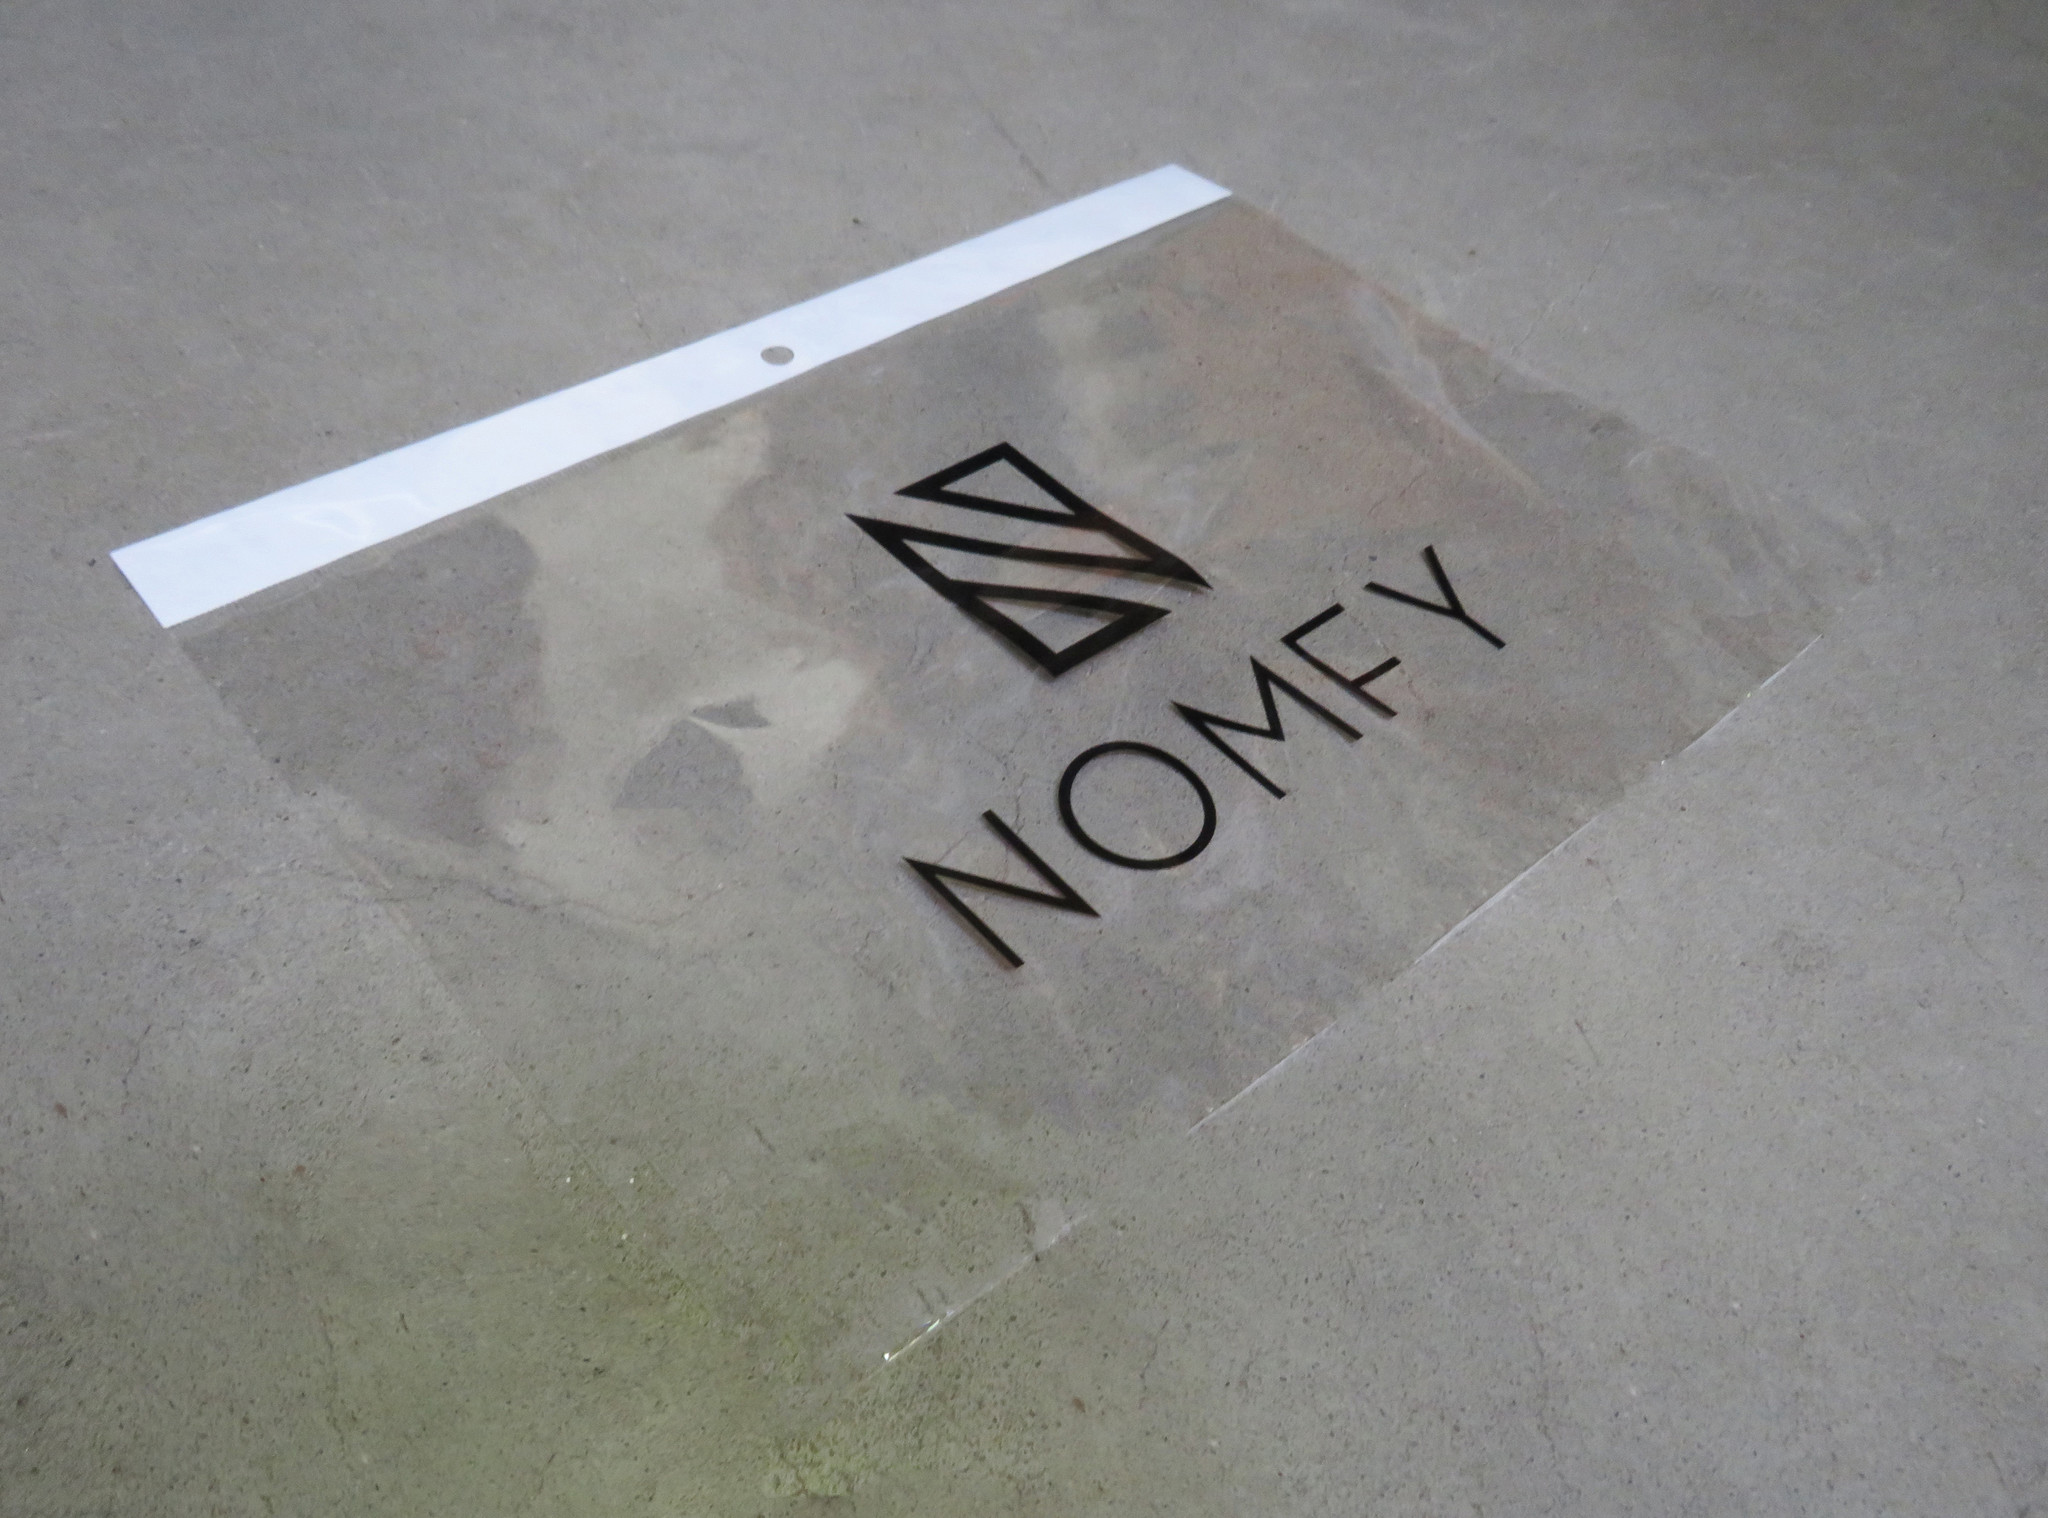 Nomfy Nomfy iPad Pro 11 inch (2018) Screenprotector - 2 PACK